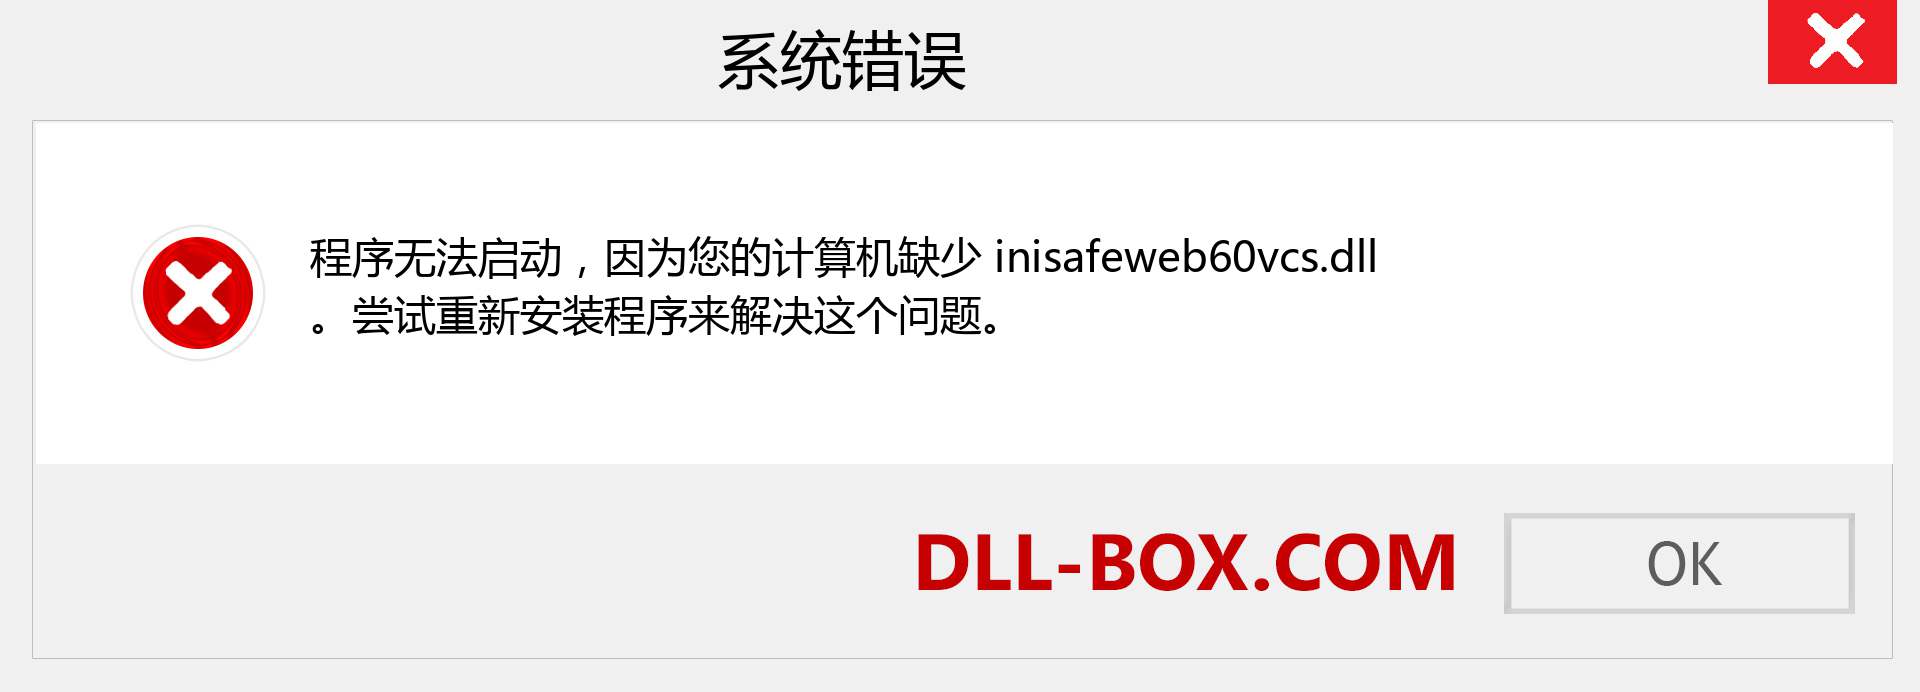 inisafeweb60vcs.dll 文件丢失？。 适用于 Windows 7、8、10 的下载 - 修复 Windows、照片、图像上的 inisafeweb60vcs dll 丢失错误